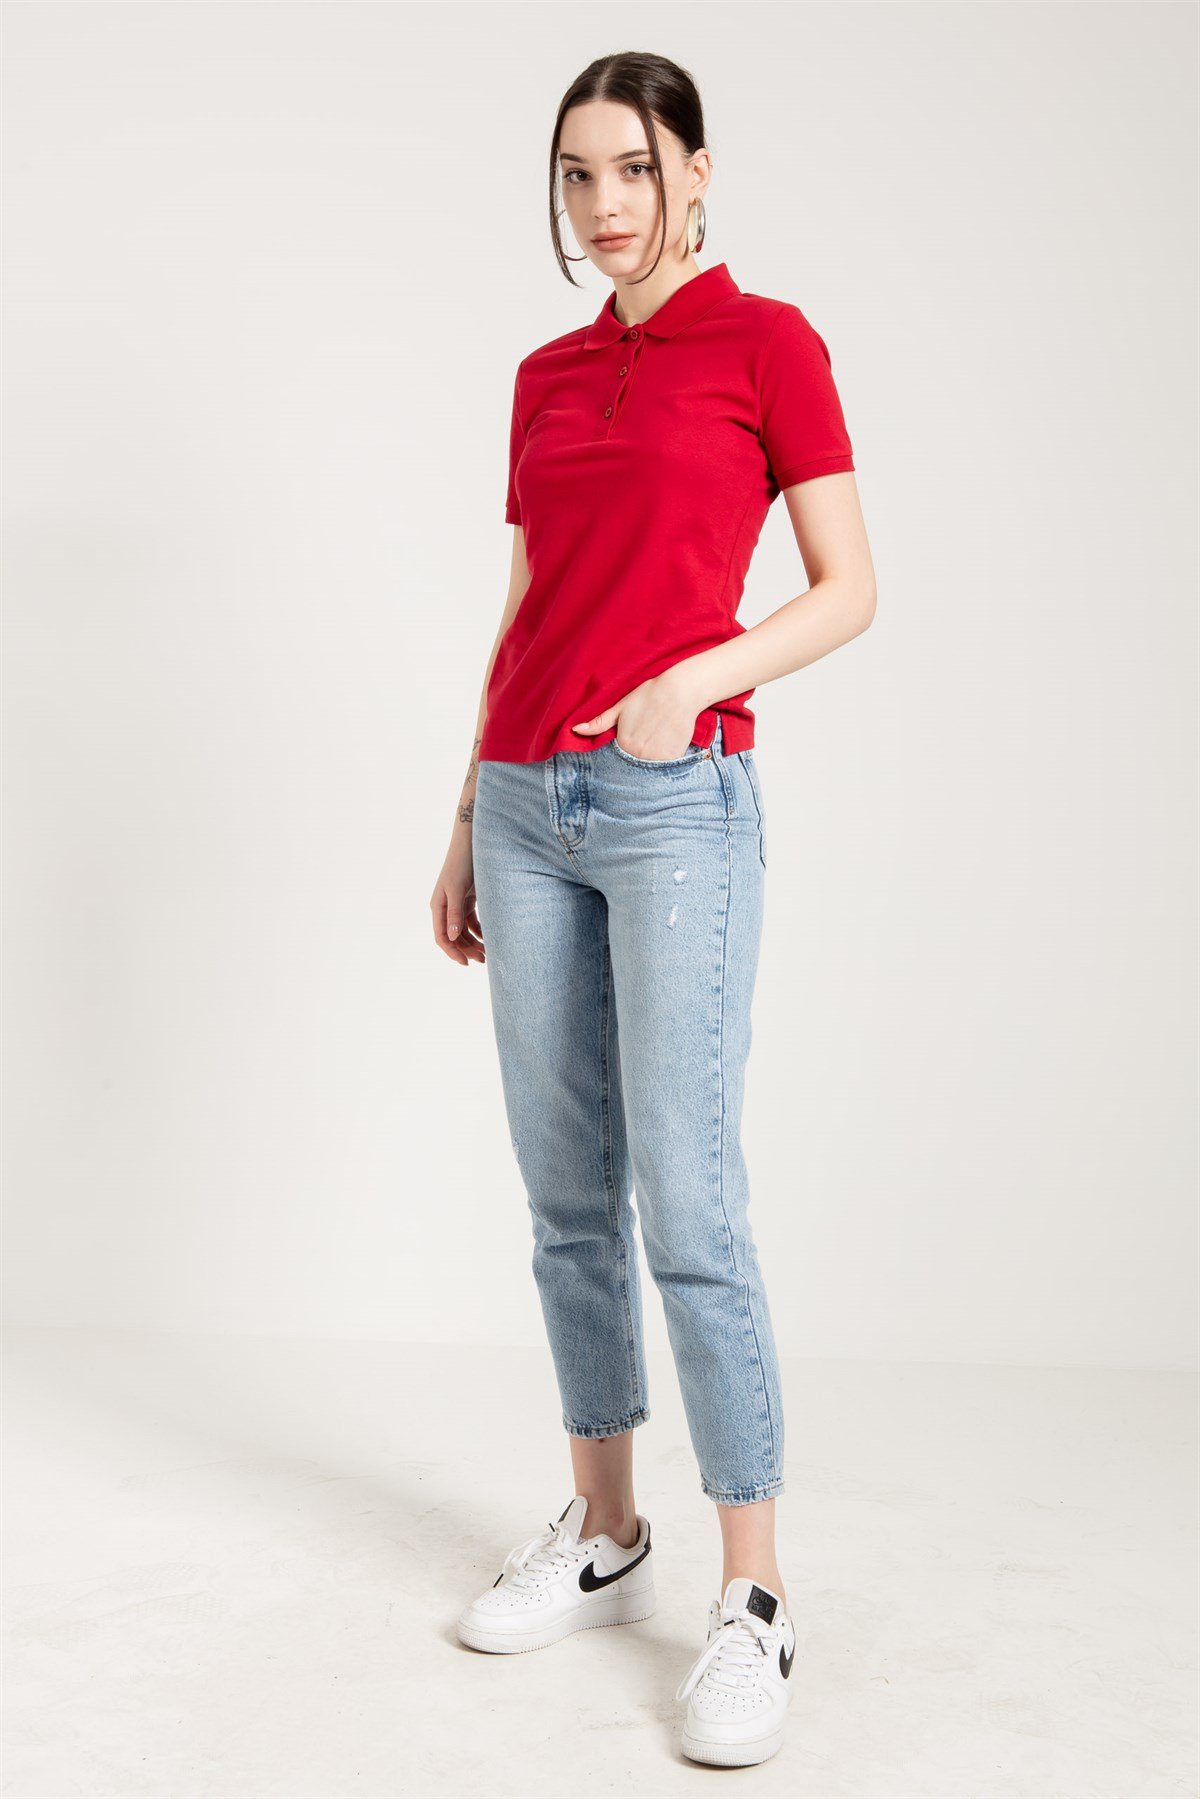 Kırmızı Klasik Kadın Polo Yaka T-shirt